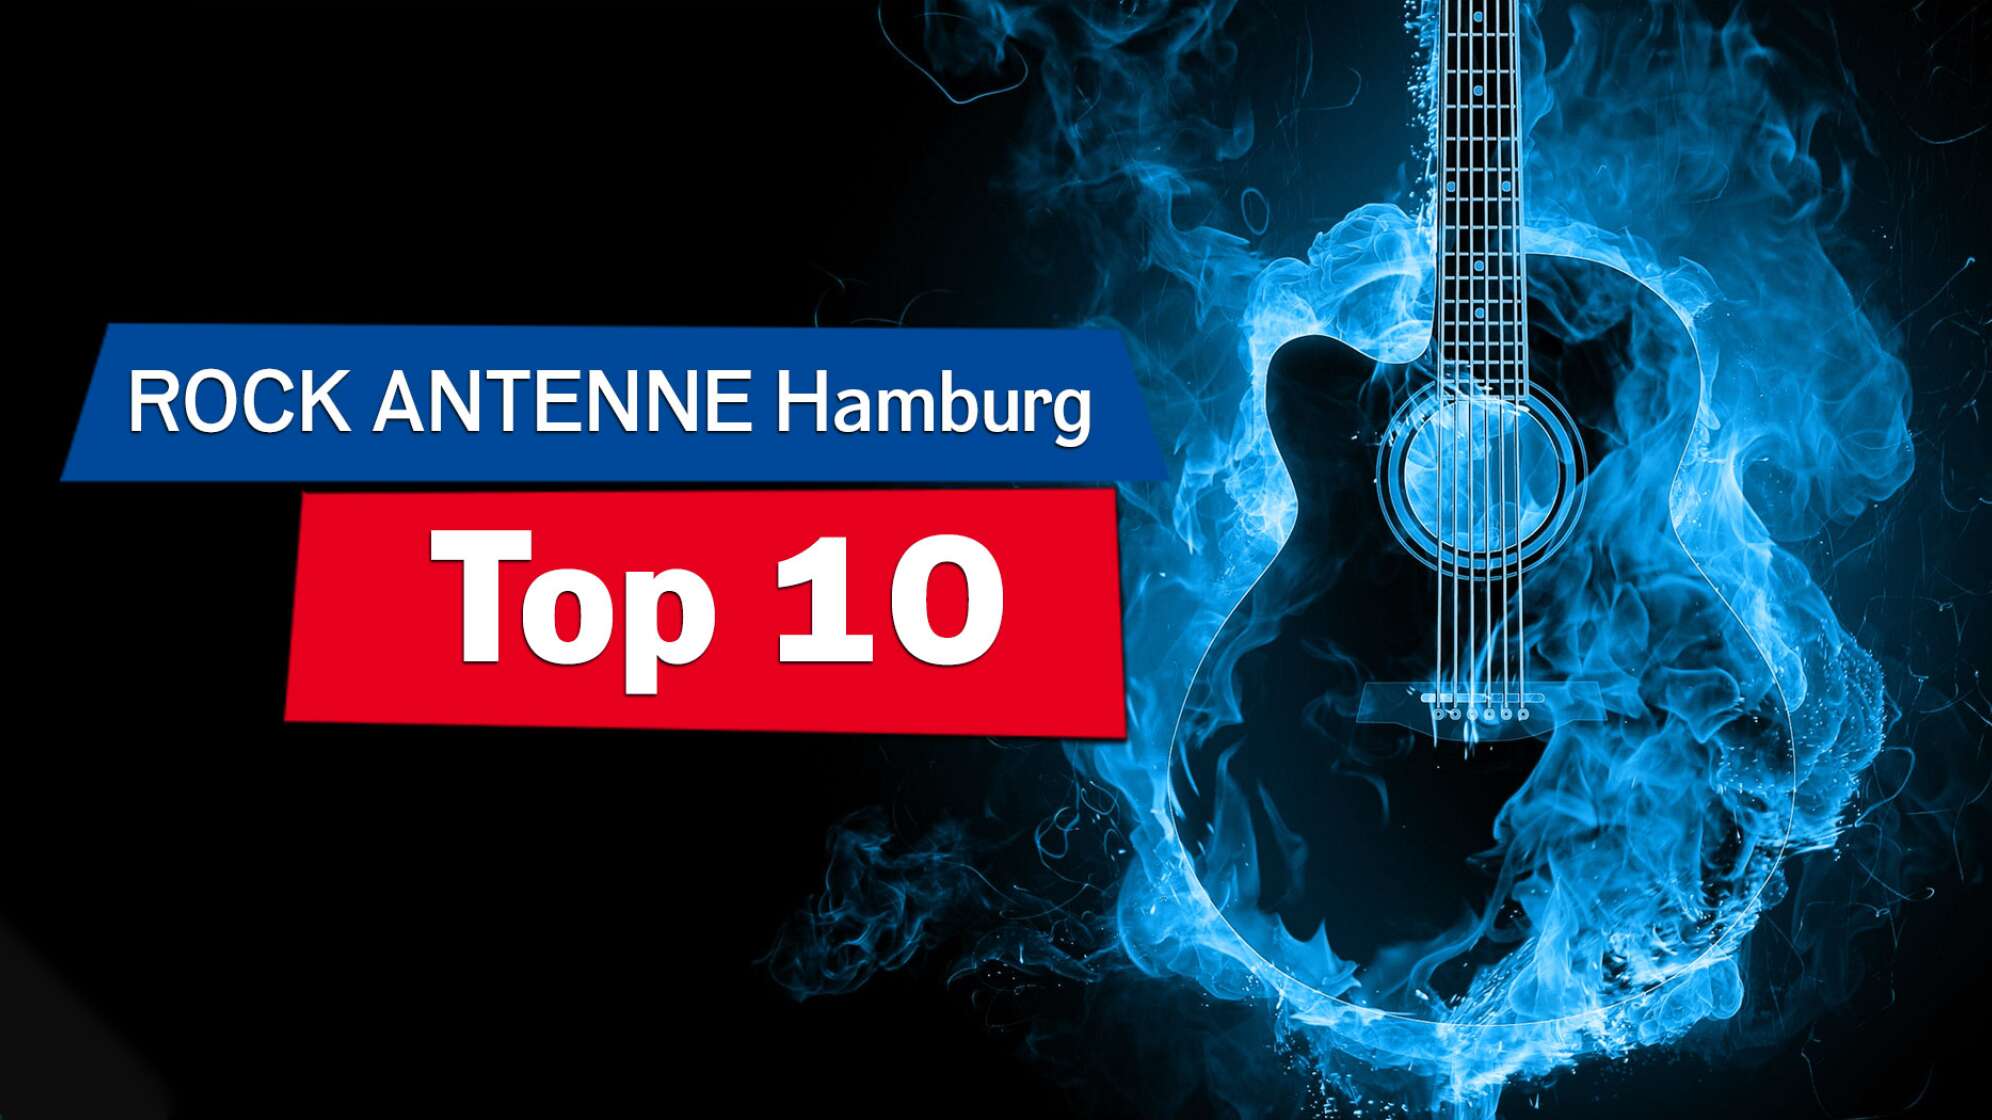 Eine Silhouette einer Gitarre umgeben von blauen Flammen, Bildaufschrift: Die ROCK ANTENNE HamburgTop 10"